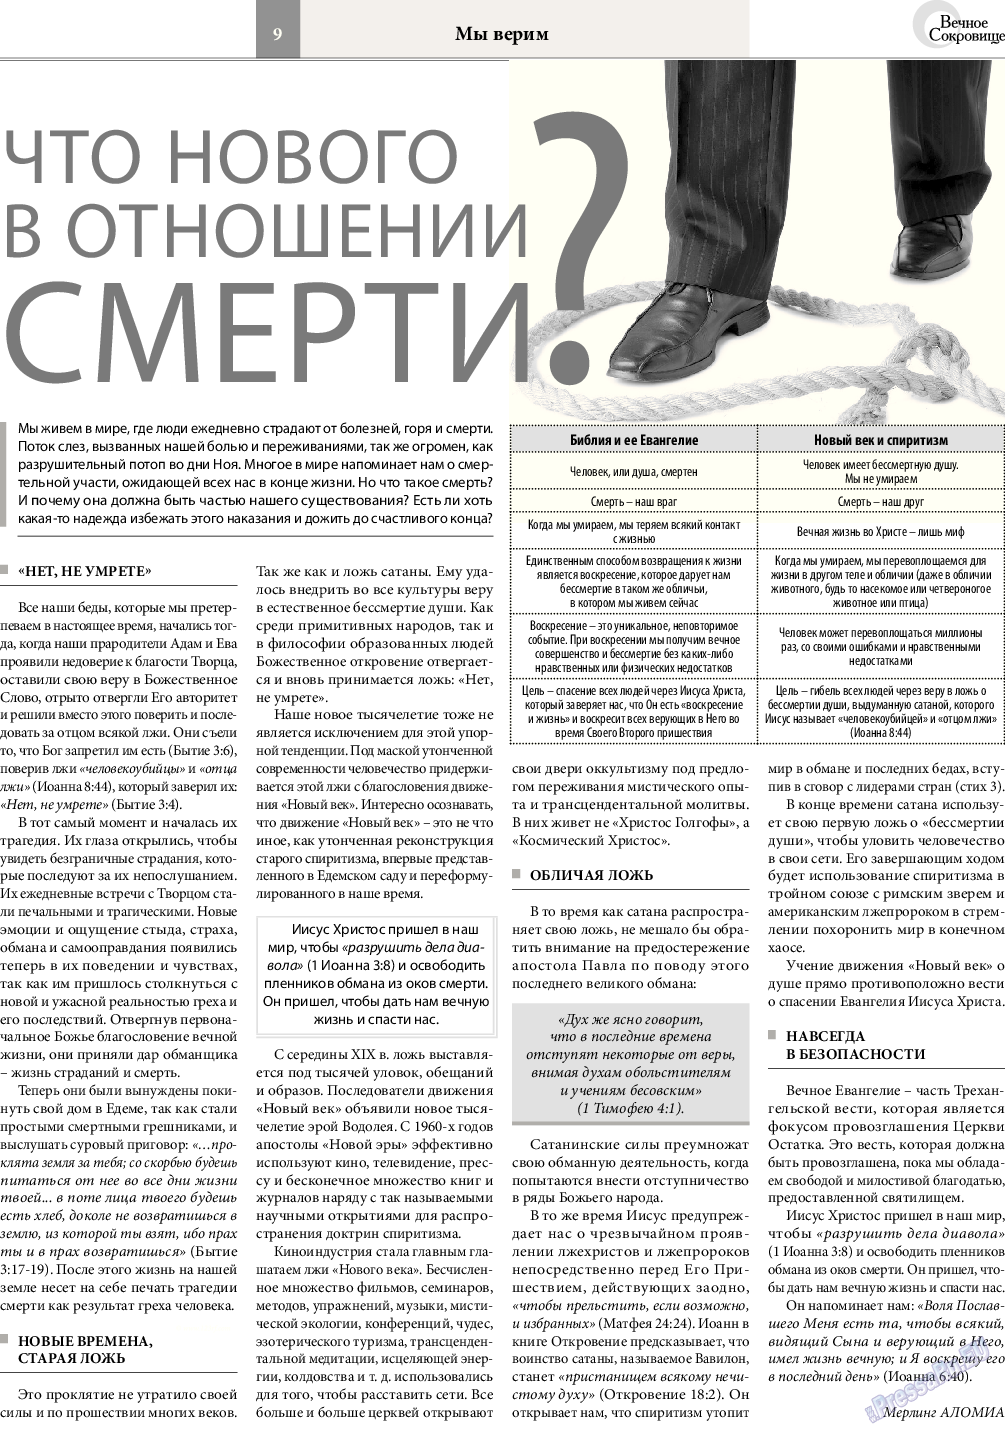 Вечное сокровище (газета). 2016 год, номер 6, стр. 9